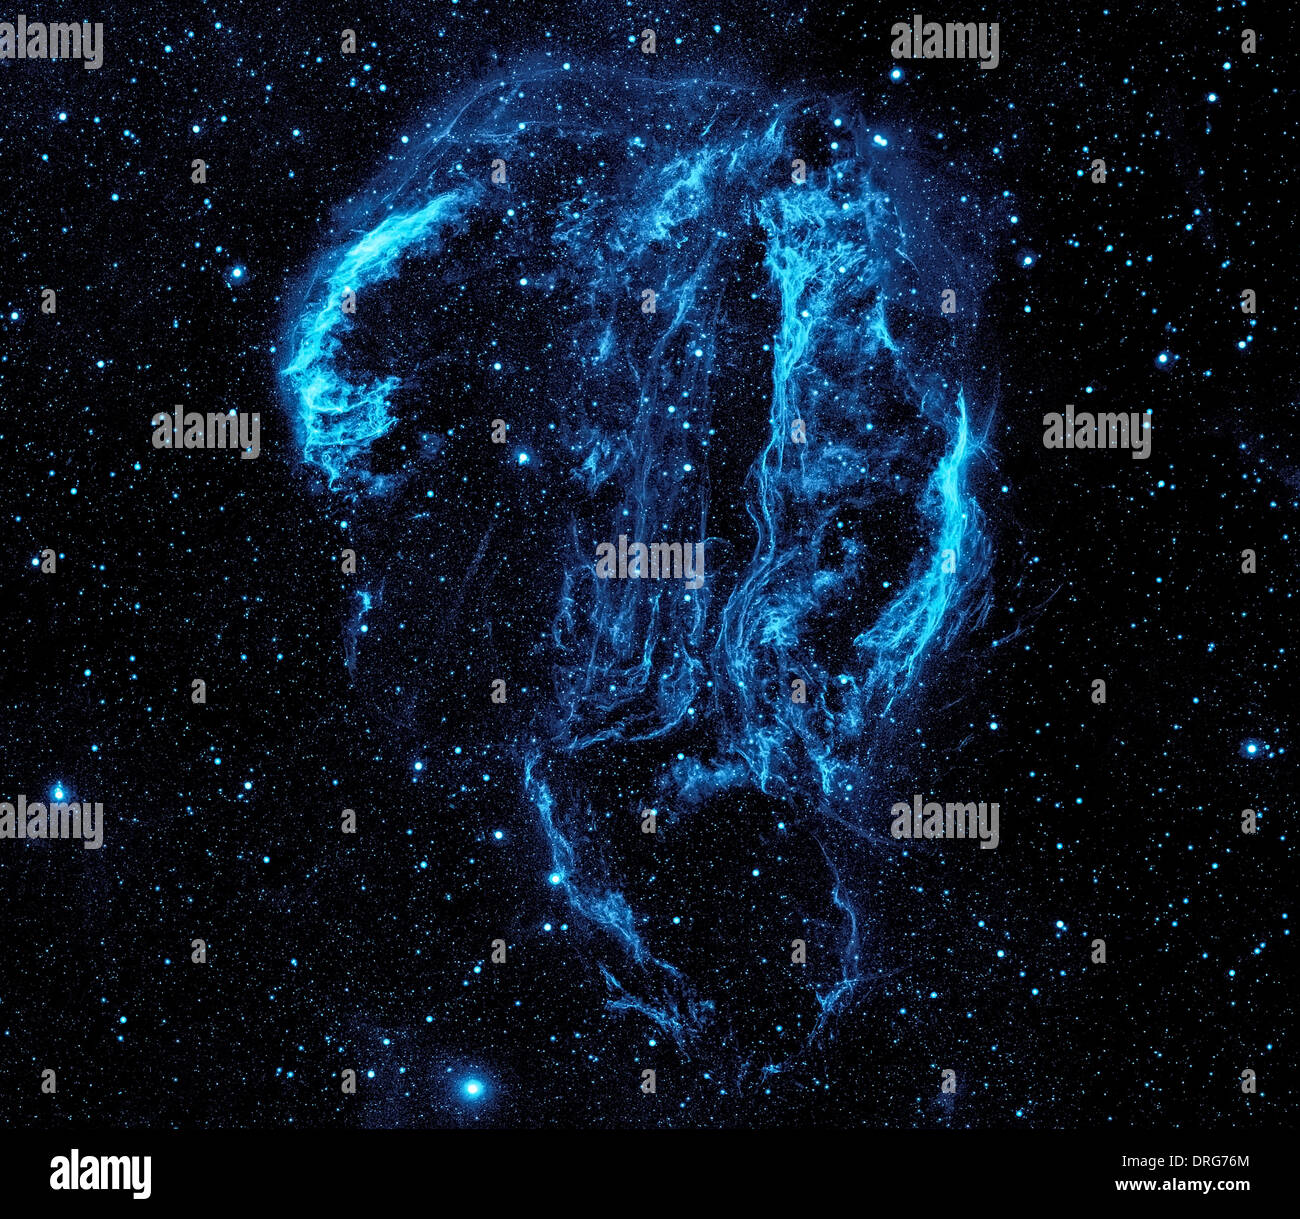 Hot polvere e gas illuminarsi molto in questa immagine ultravioletta della Cygnus Loop nebula, prese dalla NASA il Galaxy Evolution Explorer. Foto Stock